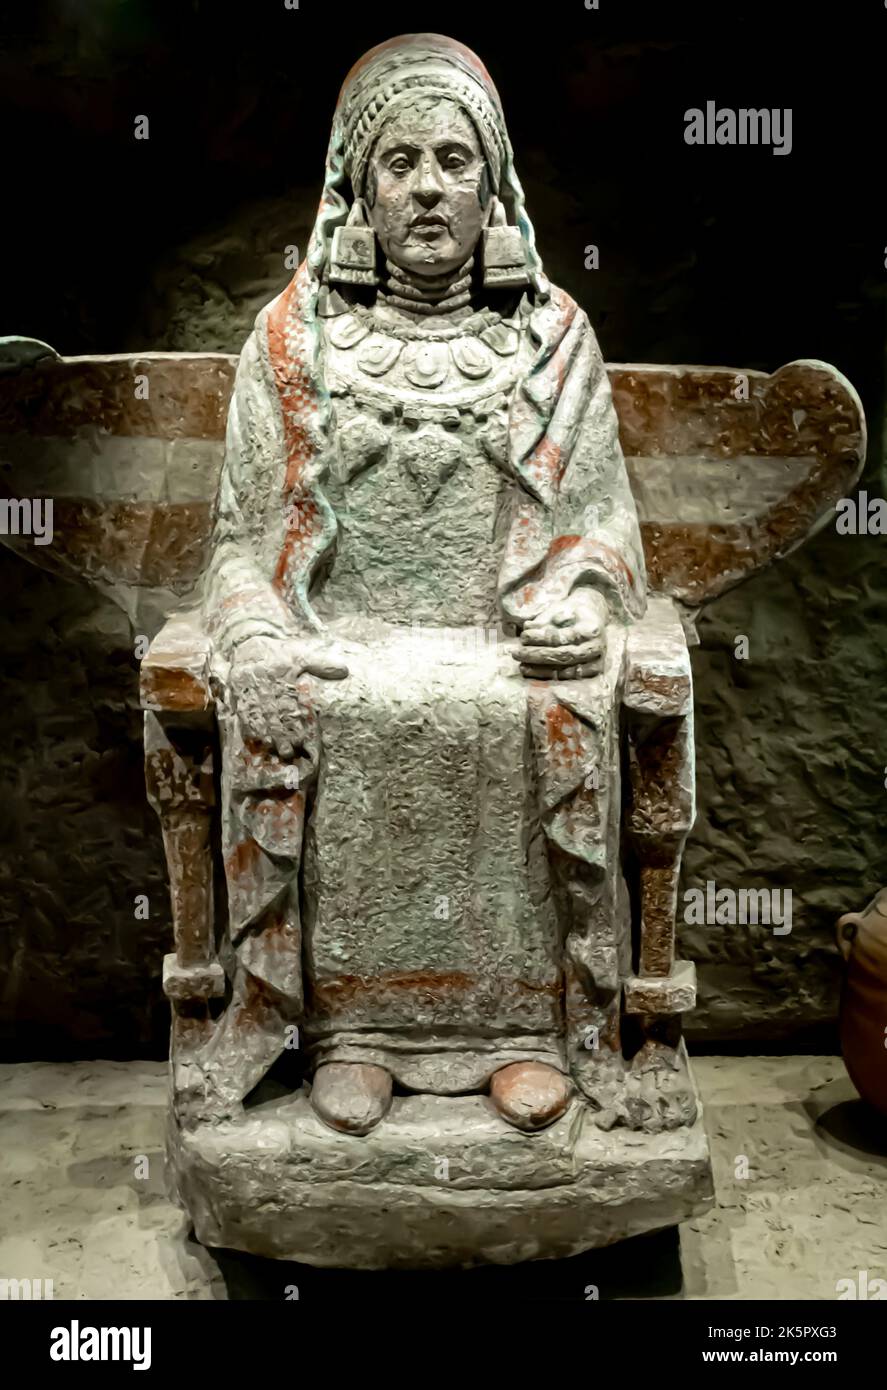 Dame à Baza. 350 C.-B. Sculpture et marchandises de grave 155 à Baza Basti, Baza, Grenade, Espagne. Sculpture de la femme Baza sur le trône utilisée comme cinéraire Banque D'Images